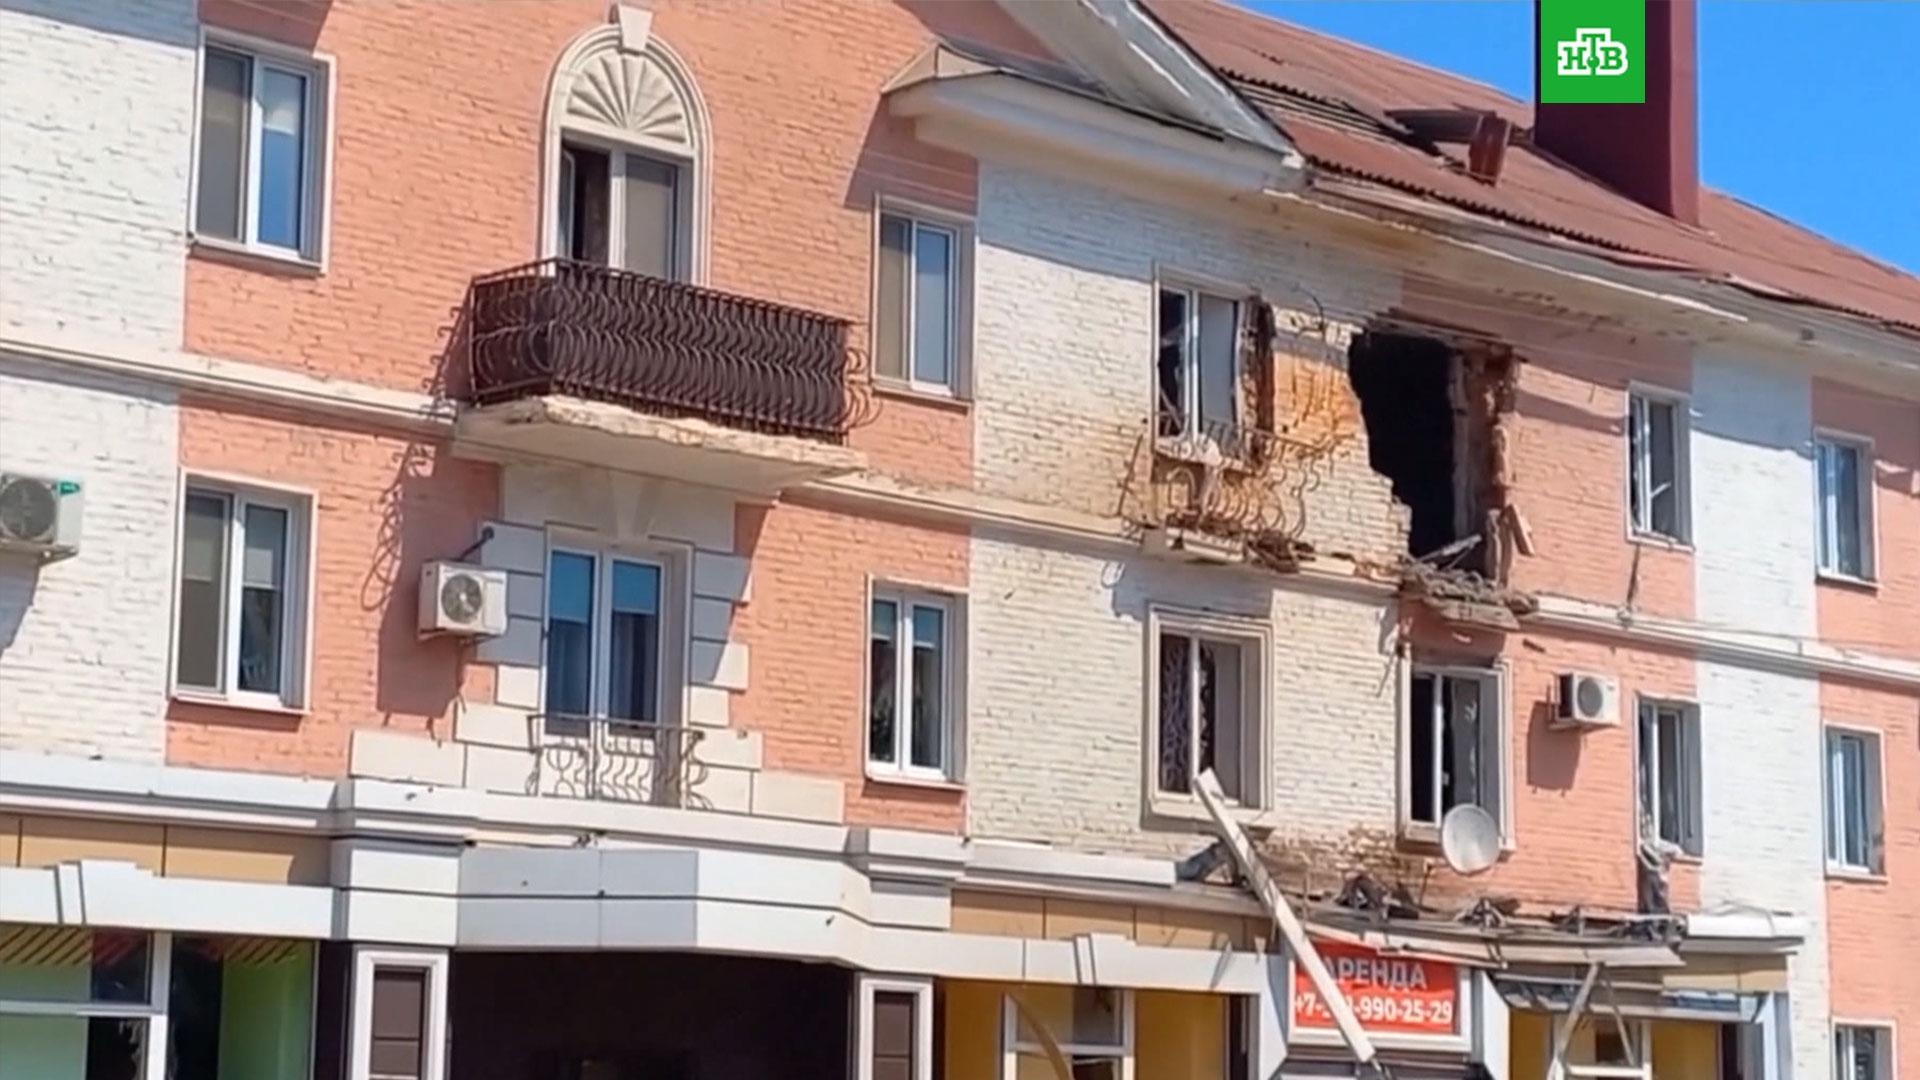 Взрыв в Белгороде: новости последних часов, свежая информация на текущий момент, 1 июня